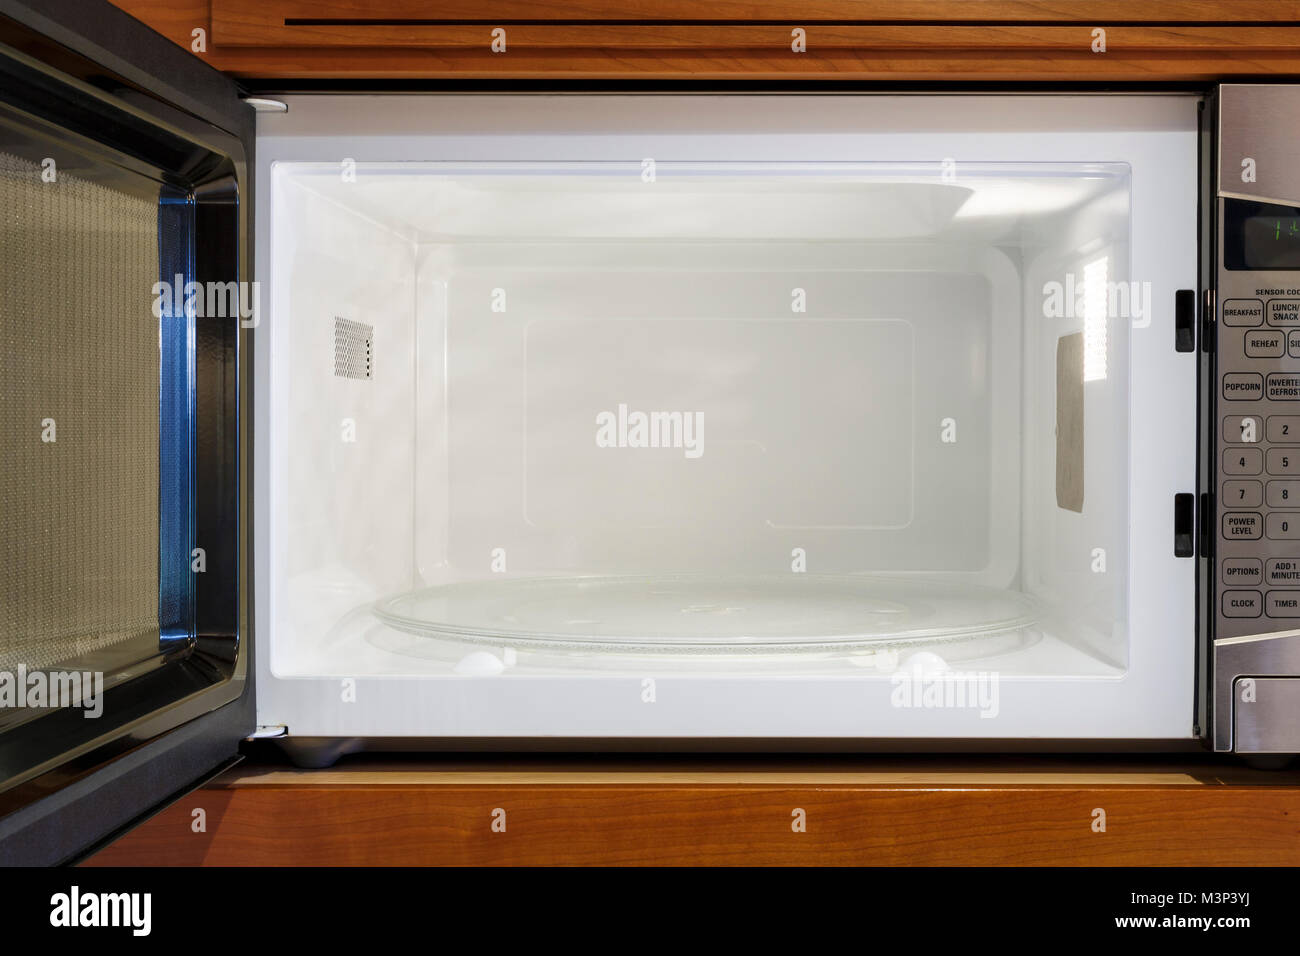 Accueil cuisine appareils électriques vue à l'intérieur vide, propre, ouvert d''un four micro-ondes four Banque D'Images